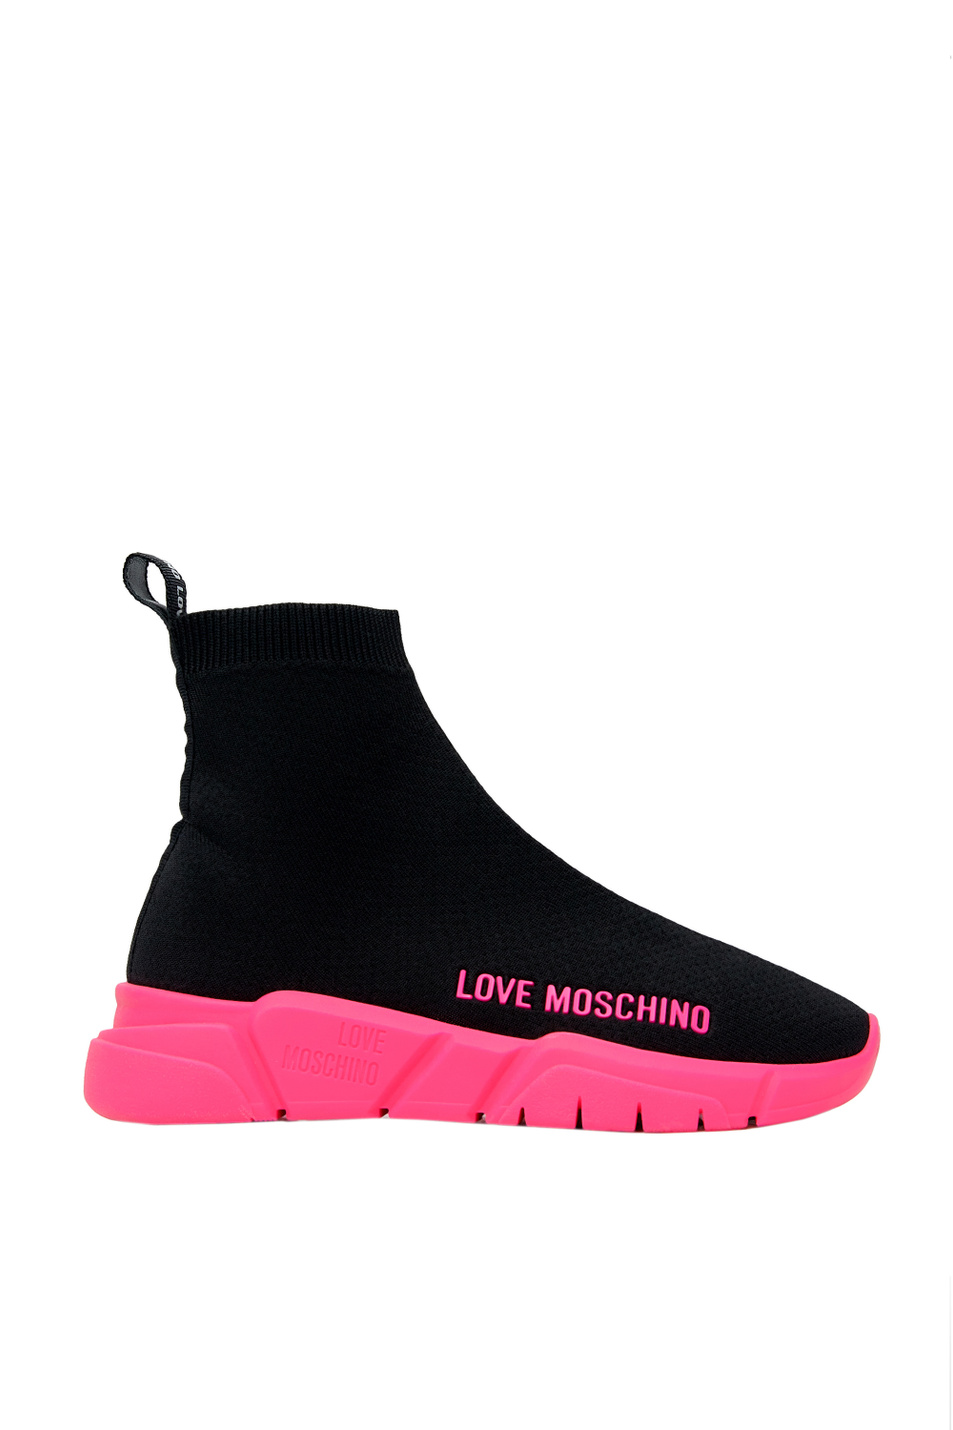 Moschino Высокие кроссовки с текстильным верхом (цвет ), артикул JA15343G0CIZ | Фото 1